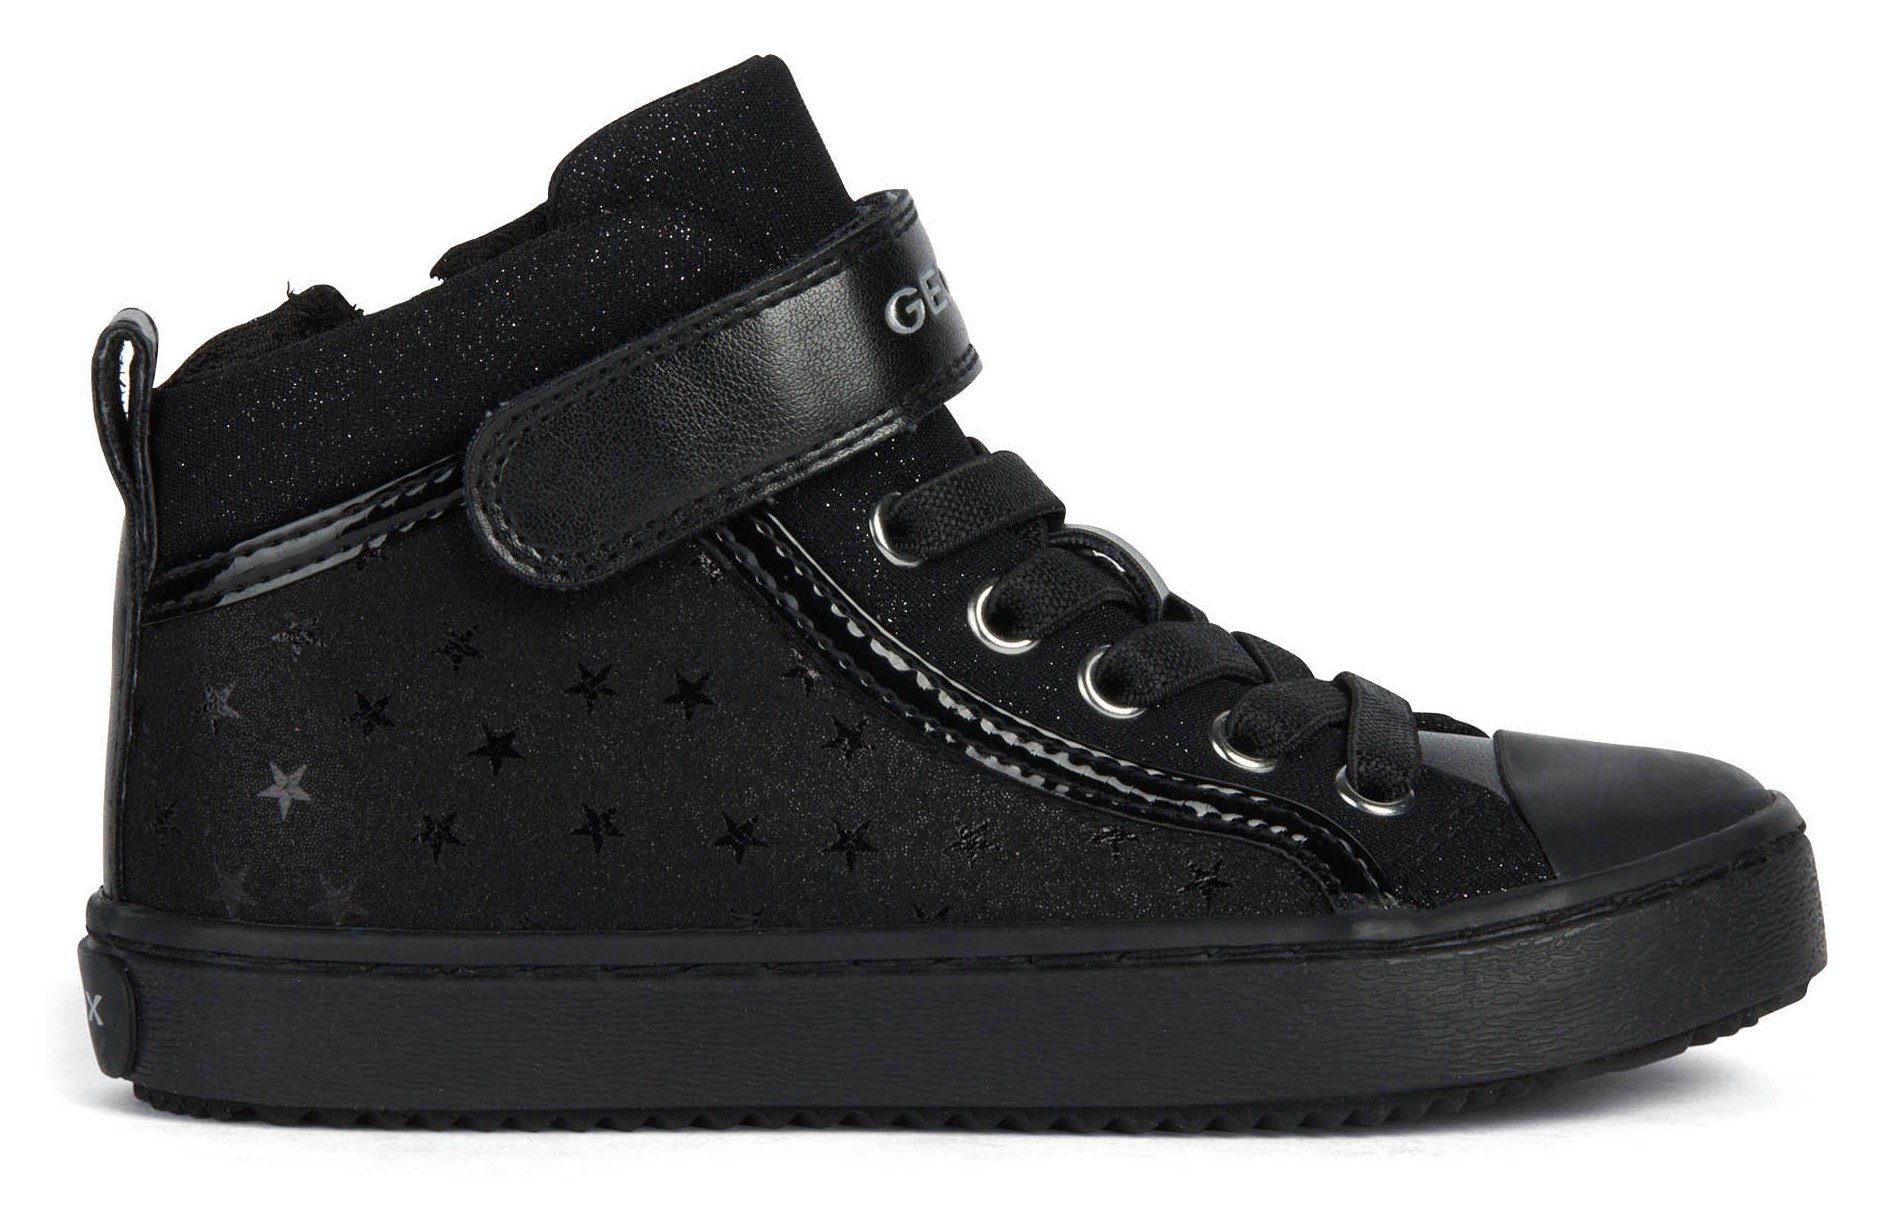 Geox J KALISPERA GIRL stylischem mit Sneaker Sternenmuster schwarz